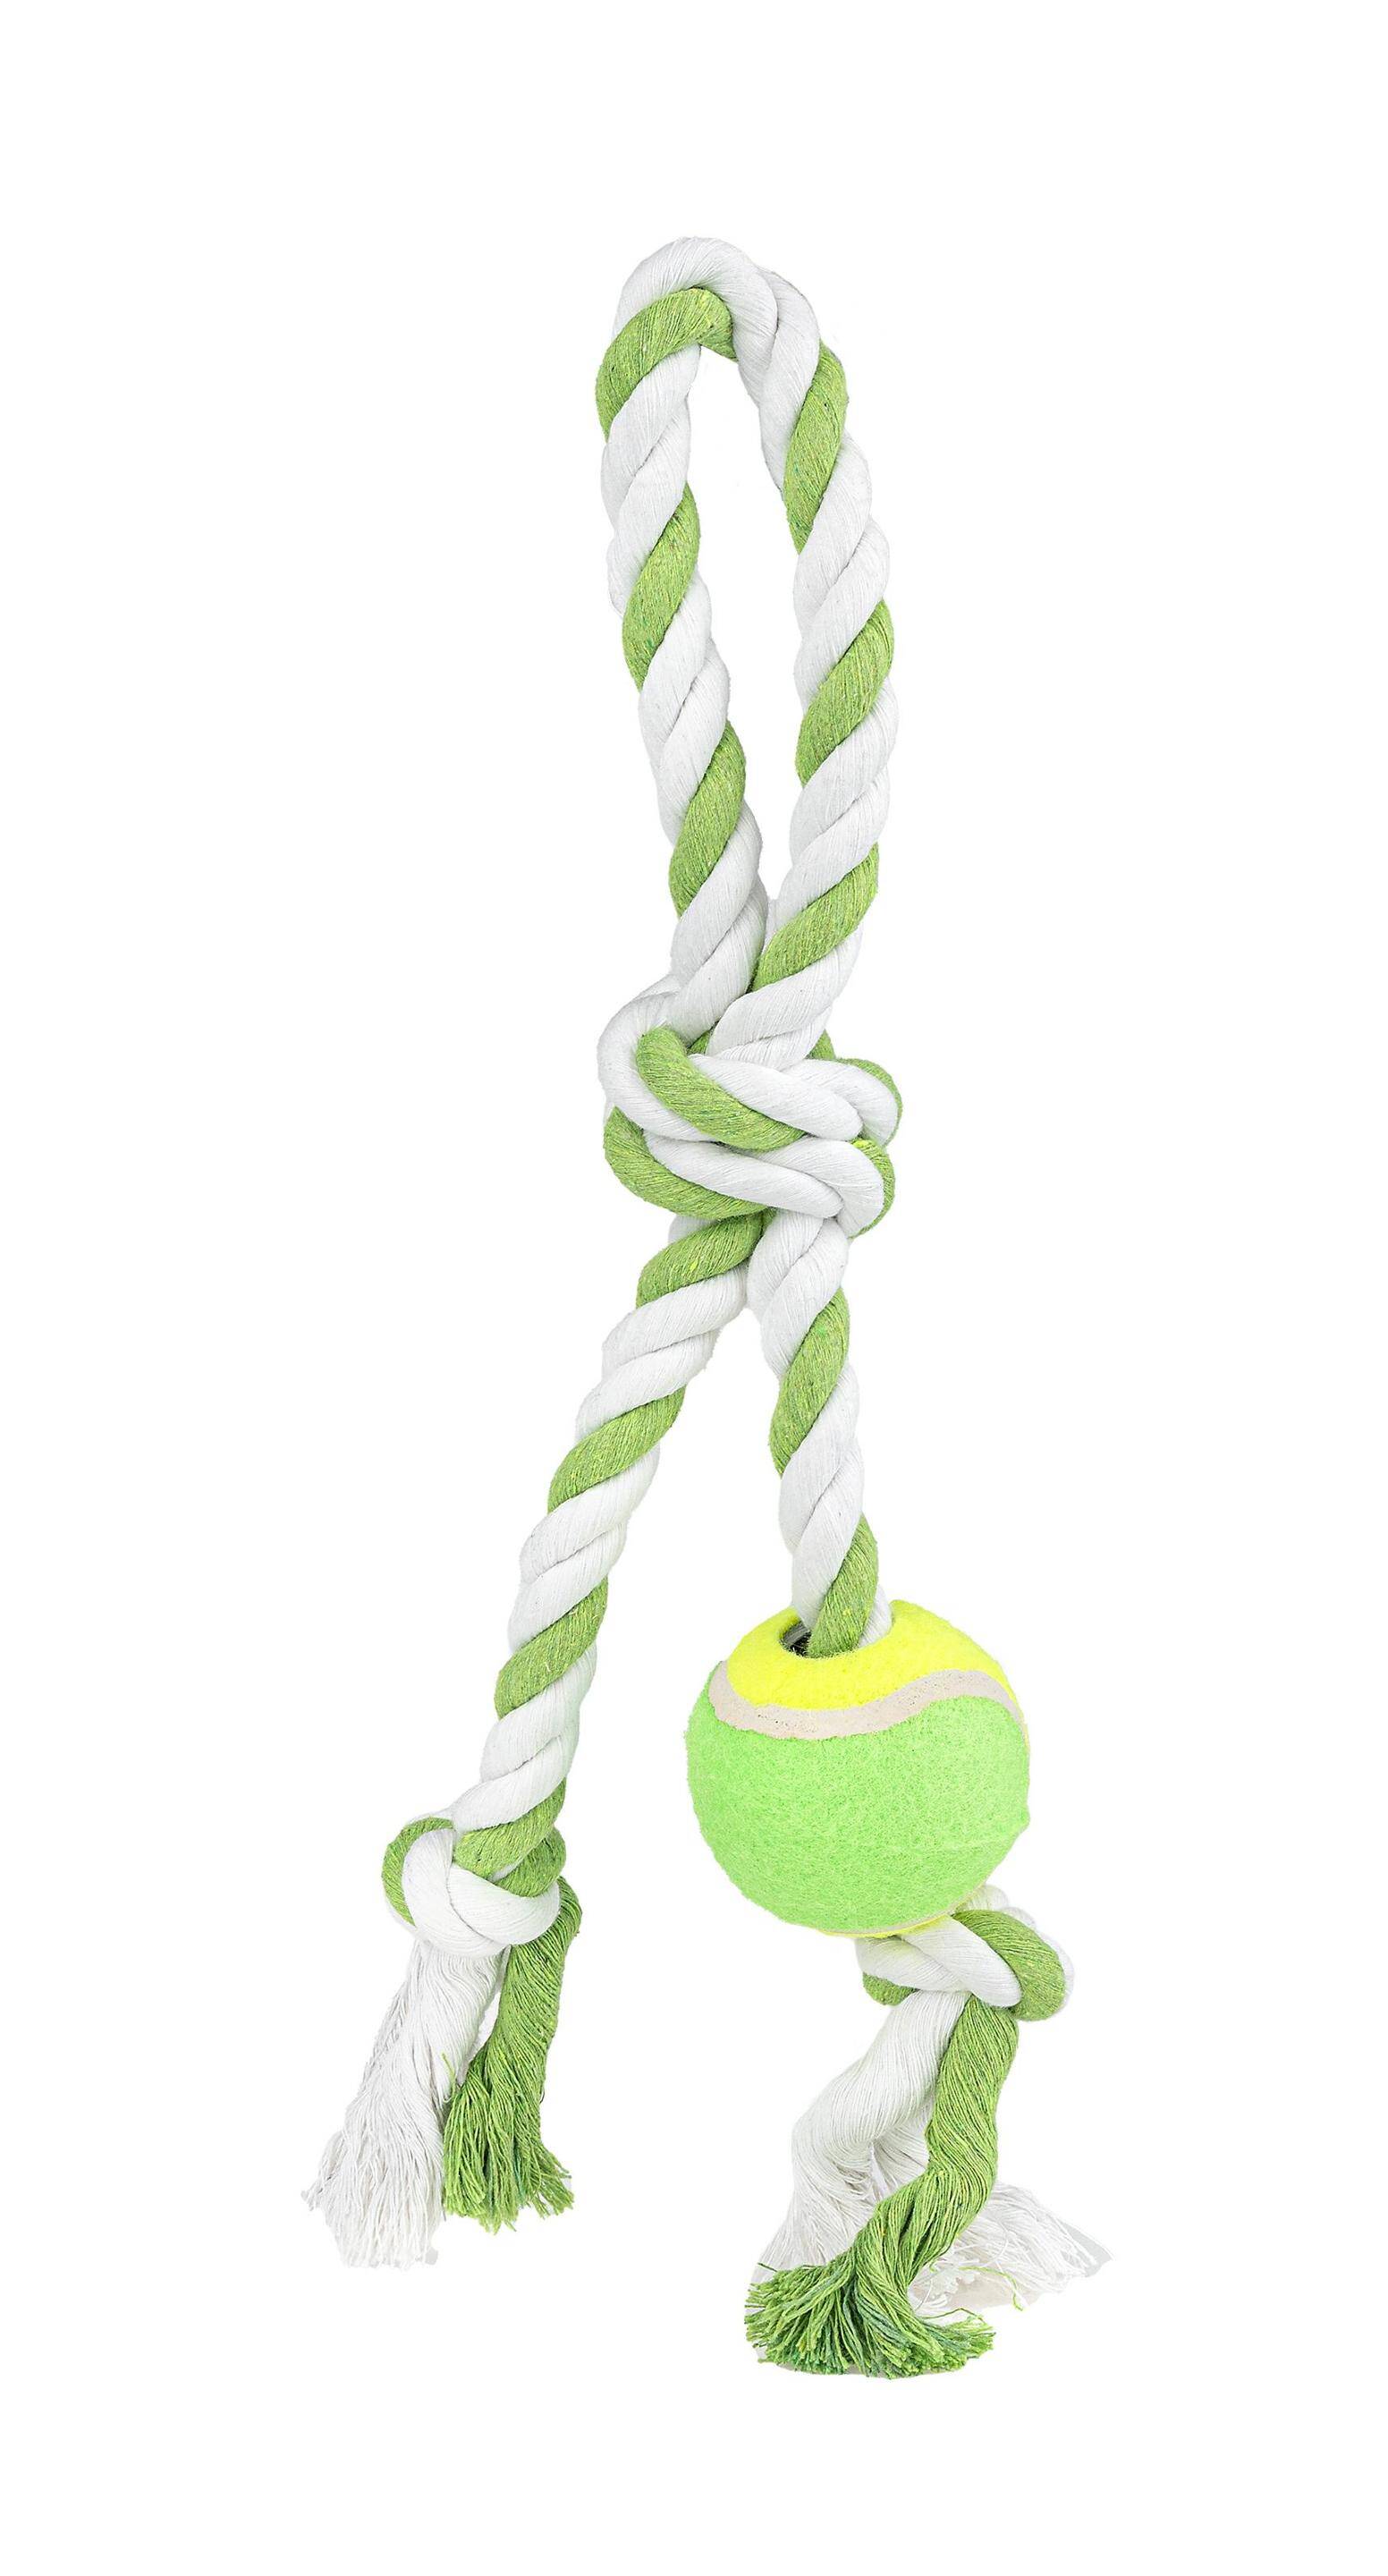 Rope tennis